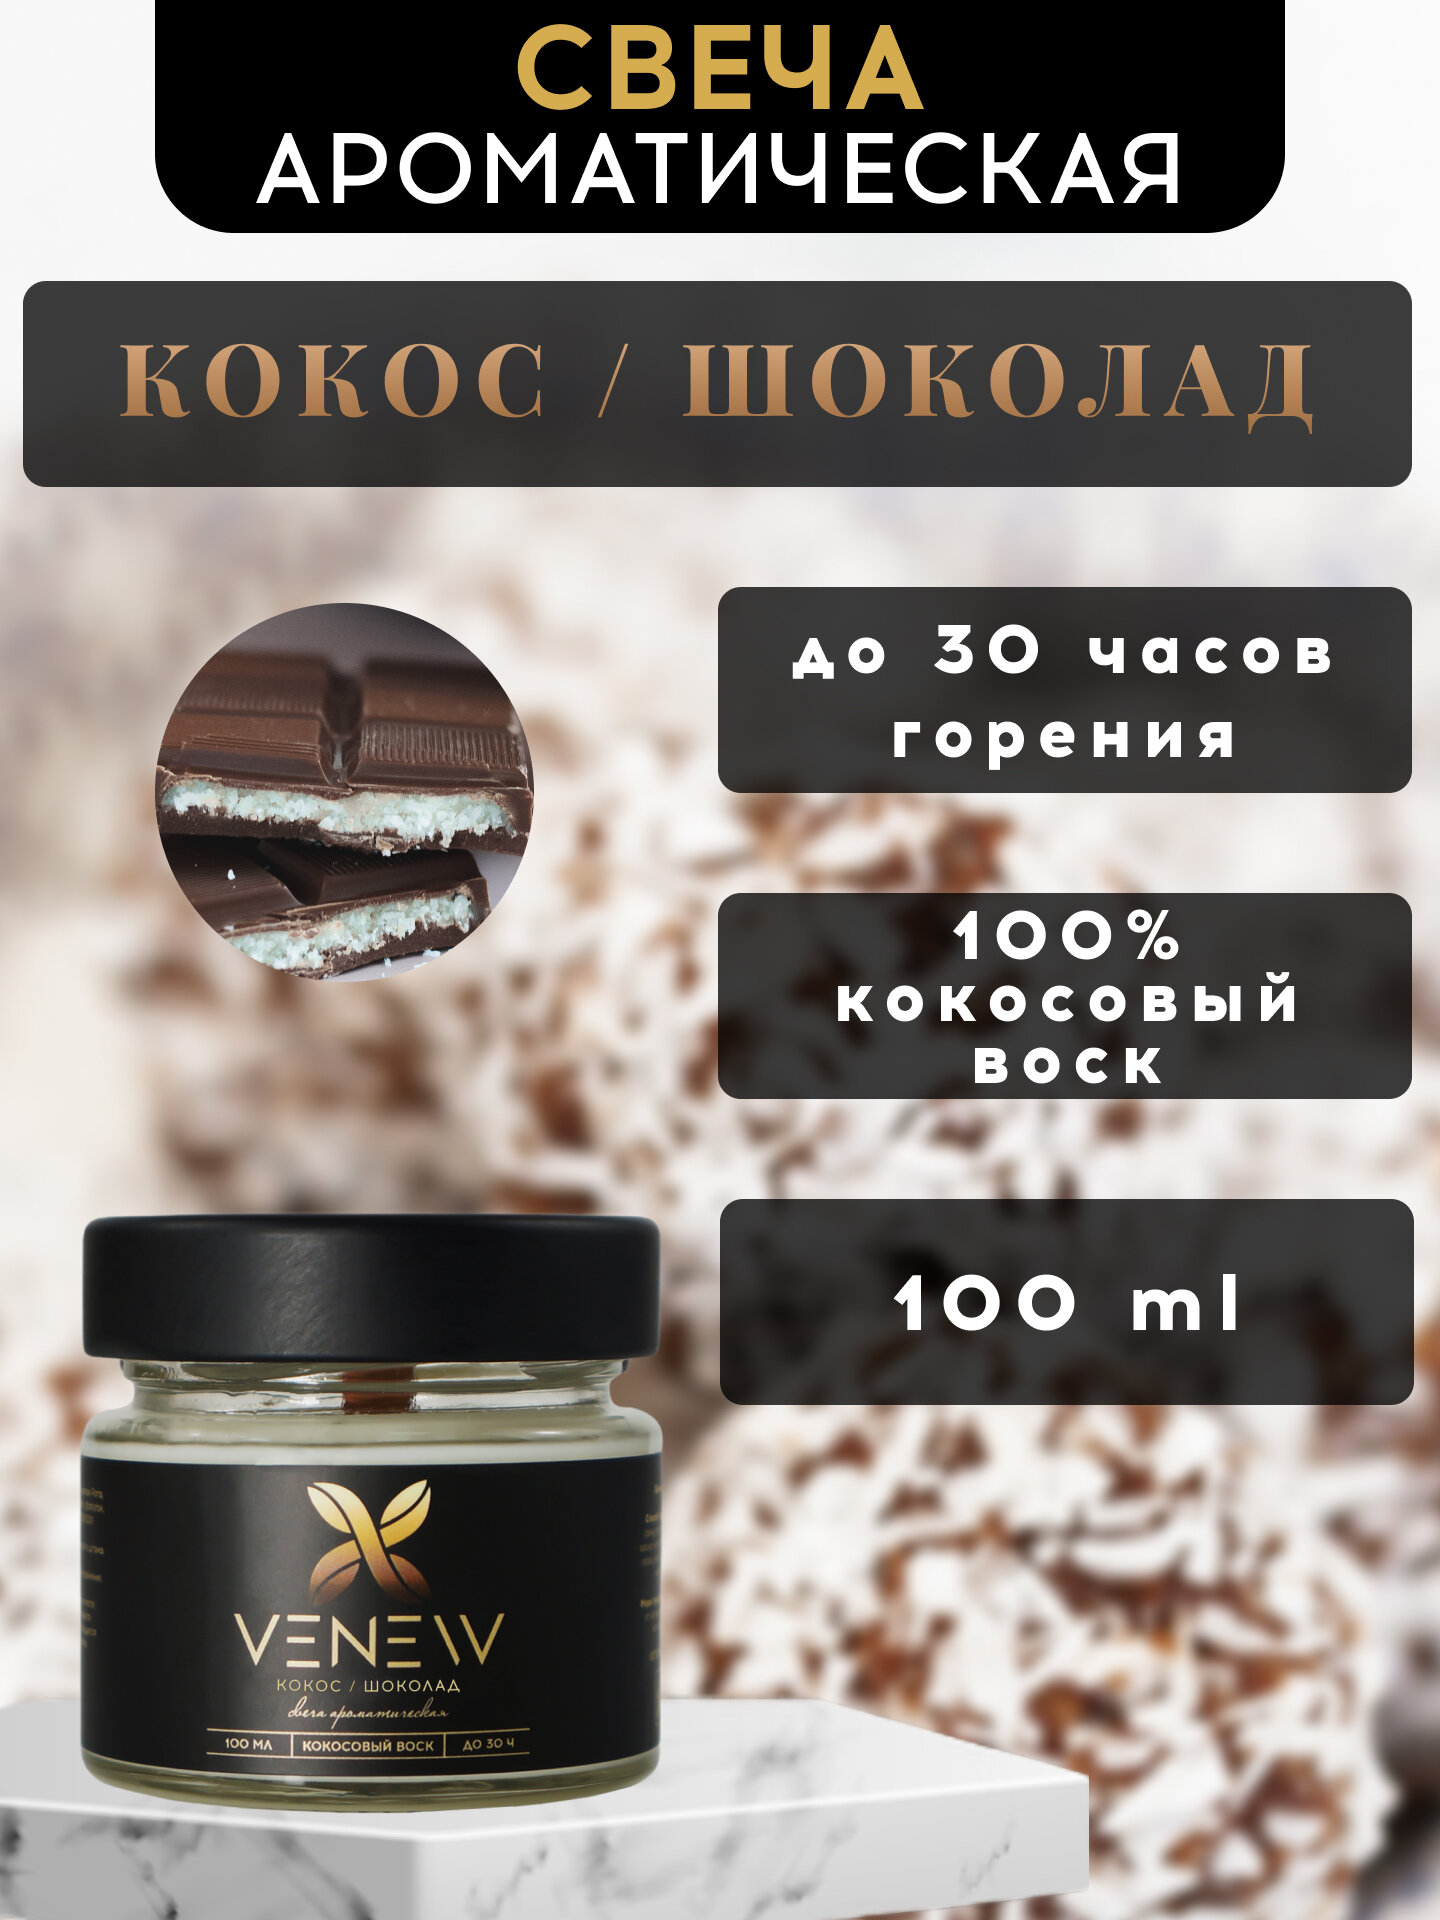 Свеча ароматическая "VENEW" - Кокос / шоколад